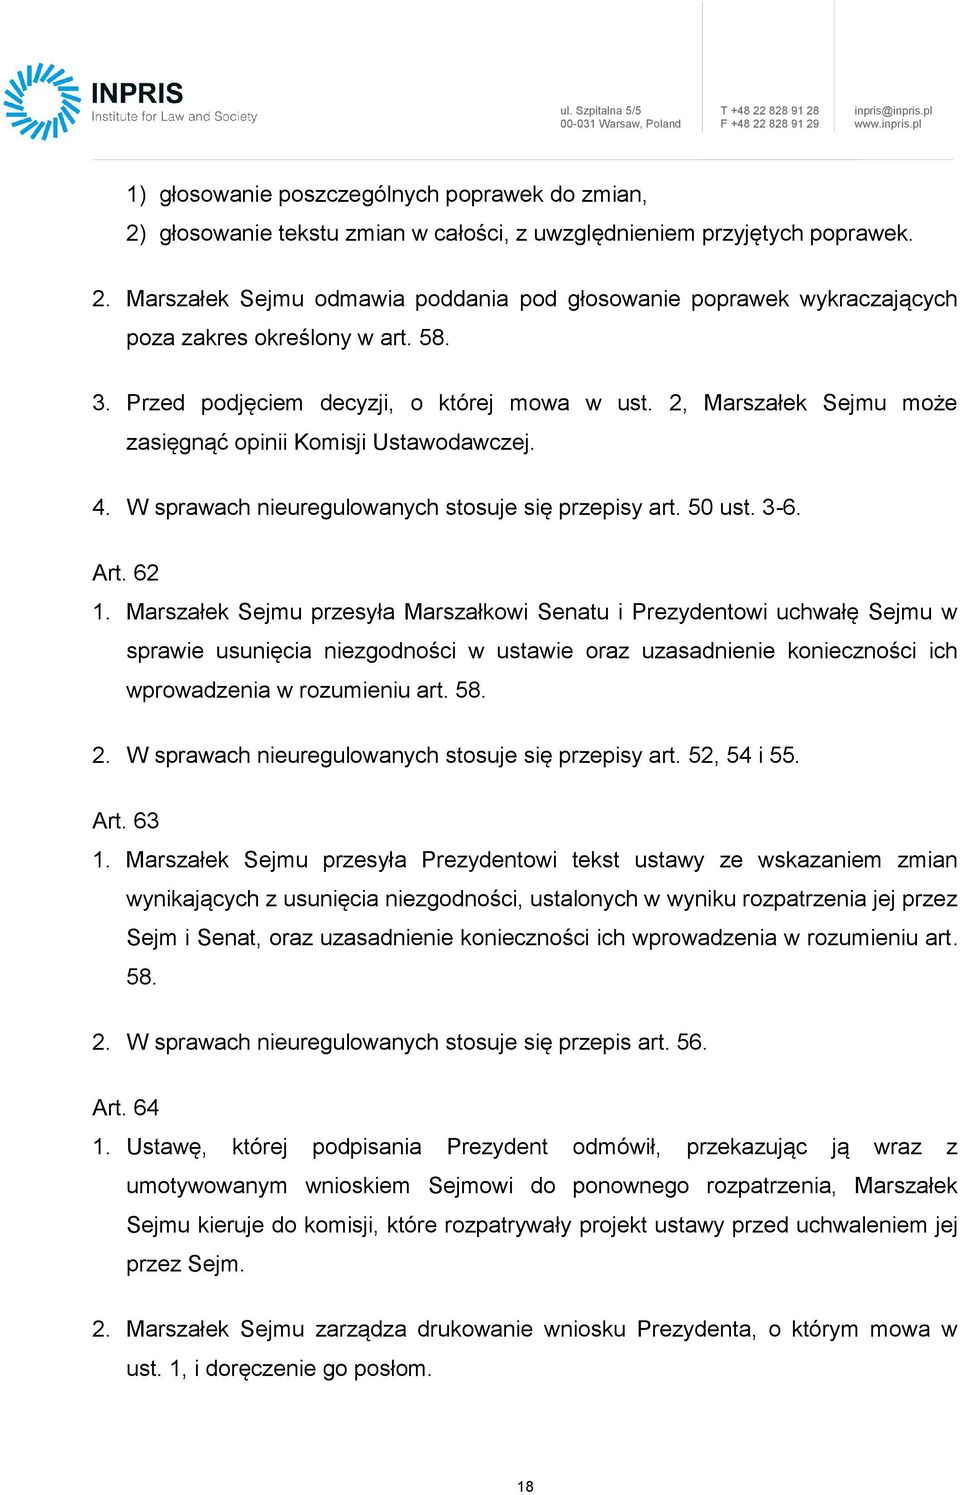 Marszałek Sejmu przesyła Marszałkowi Senatu i Prezydentowi uchwałę Sejmu w sprawie usunięcia niezgodności w ustawie oraz uzasadnienie konieczności ich wprowadzenia w rozumieniu art. 58. 2.